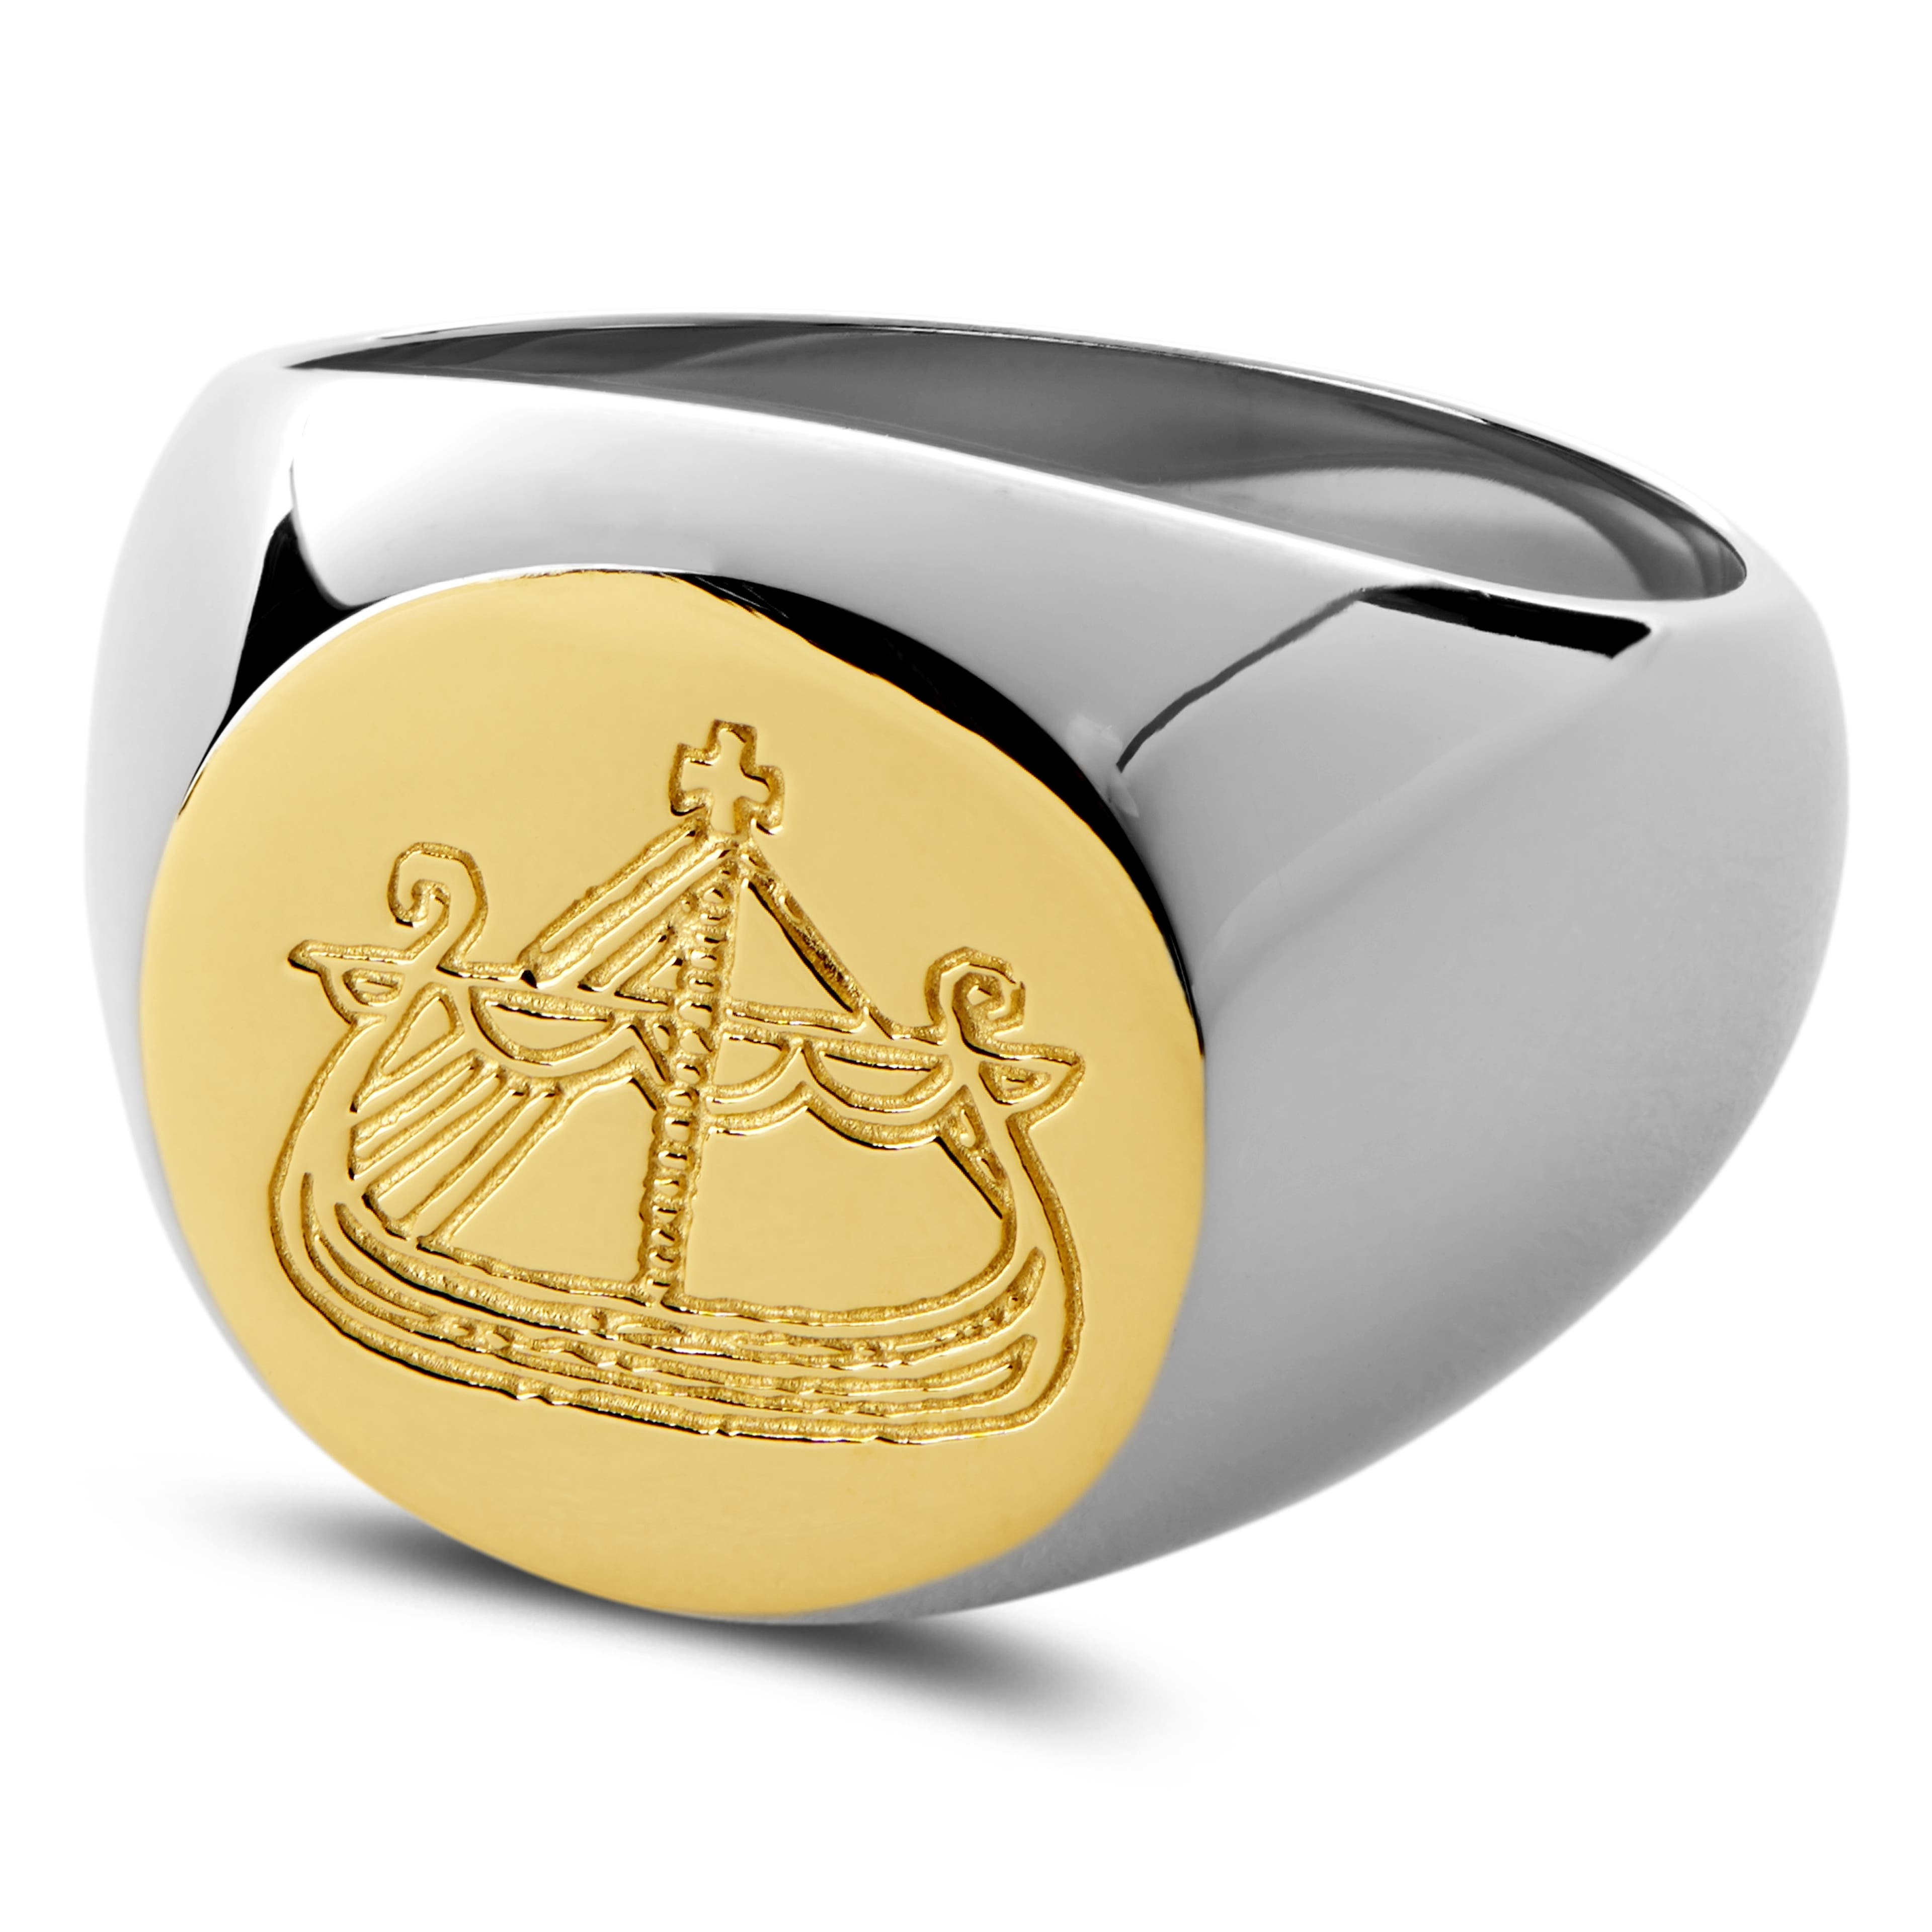 Lorne arany- és ezüstszínű pecsétgyűrű